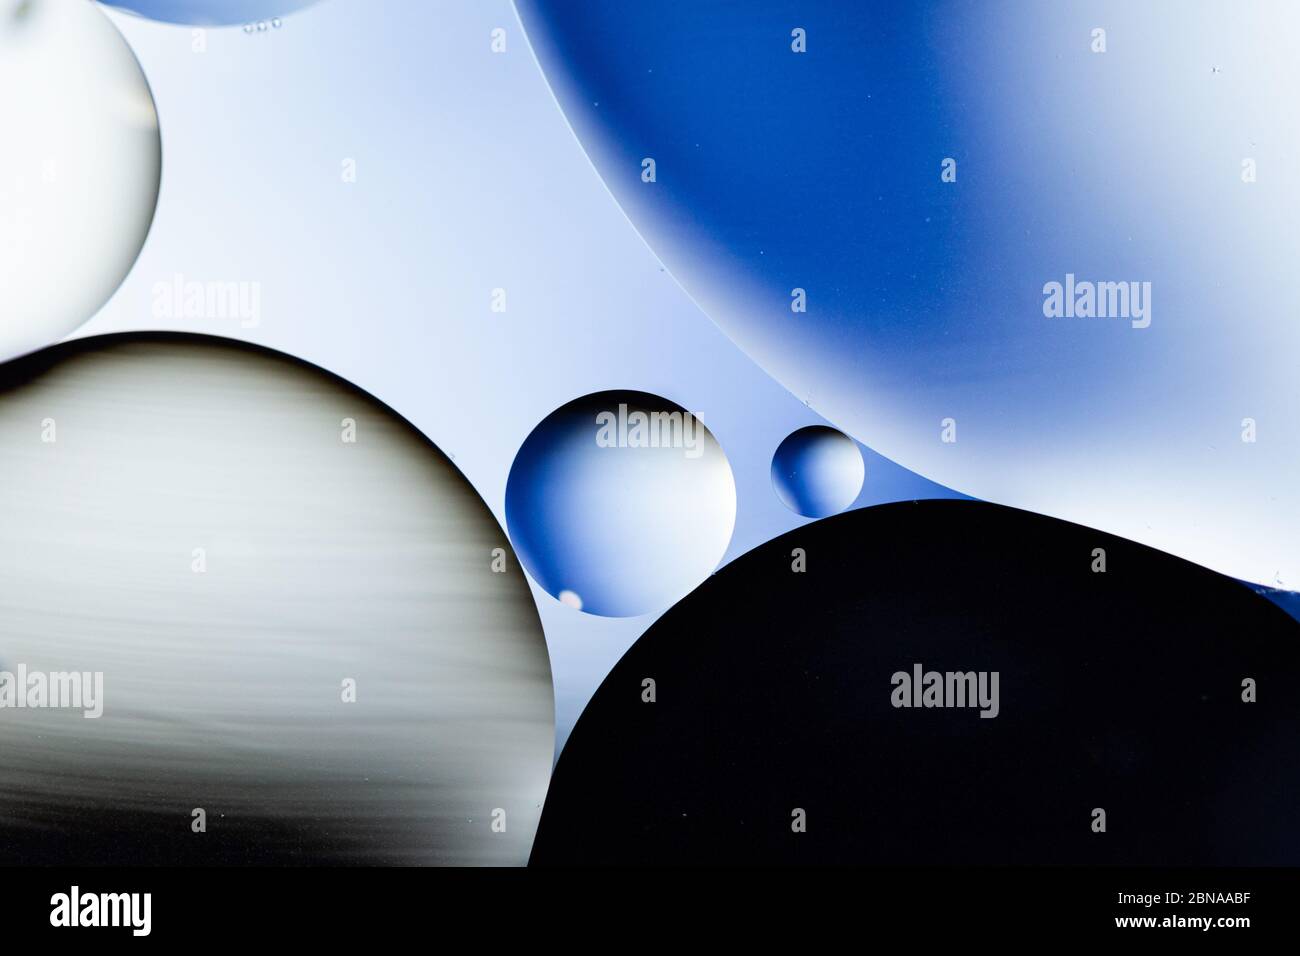 Illustrazione grafica dei cerchi blu, grigi e bianchi su sfondo azzurro Foto Stock